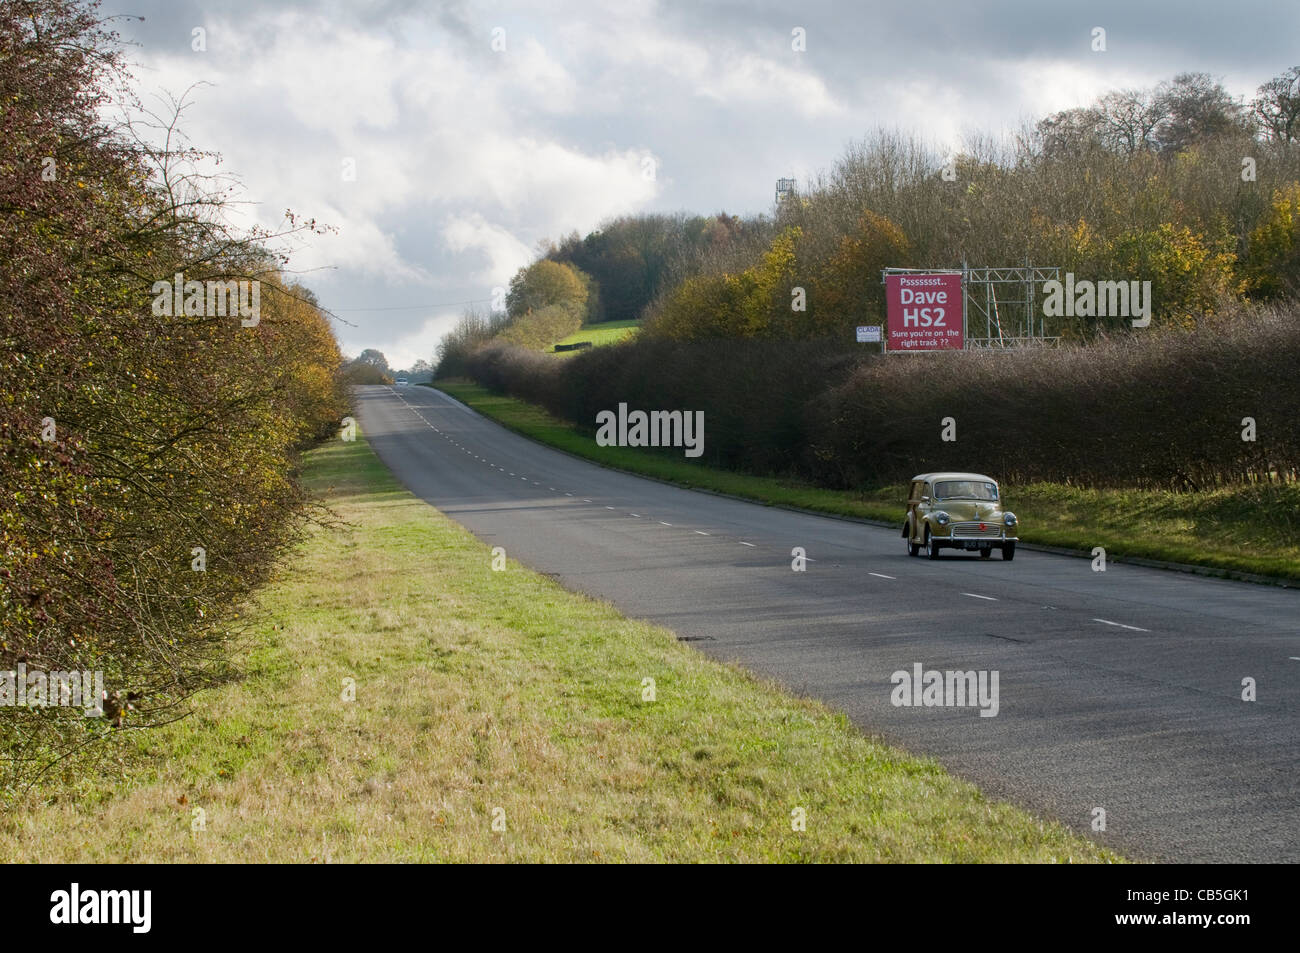 Schild an der A413 in der Nähe von Amersham, drängen "Dave" der Premierminister, der HS2 Schiene Vorschlag Pläne zu überdenken. Stockfoto